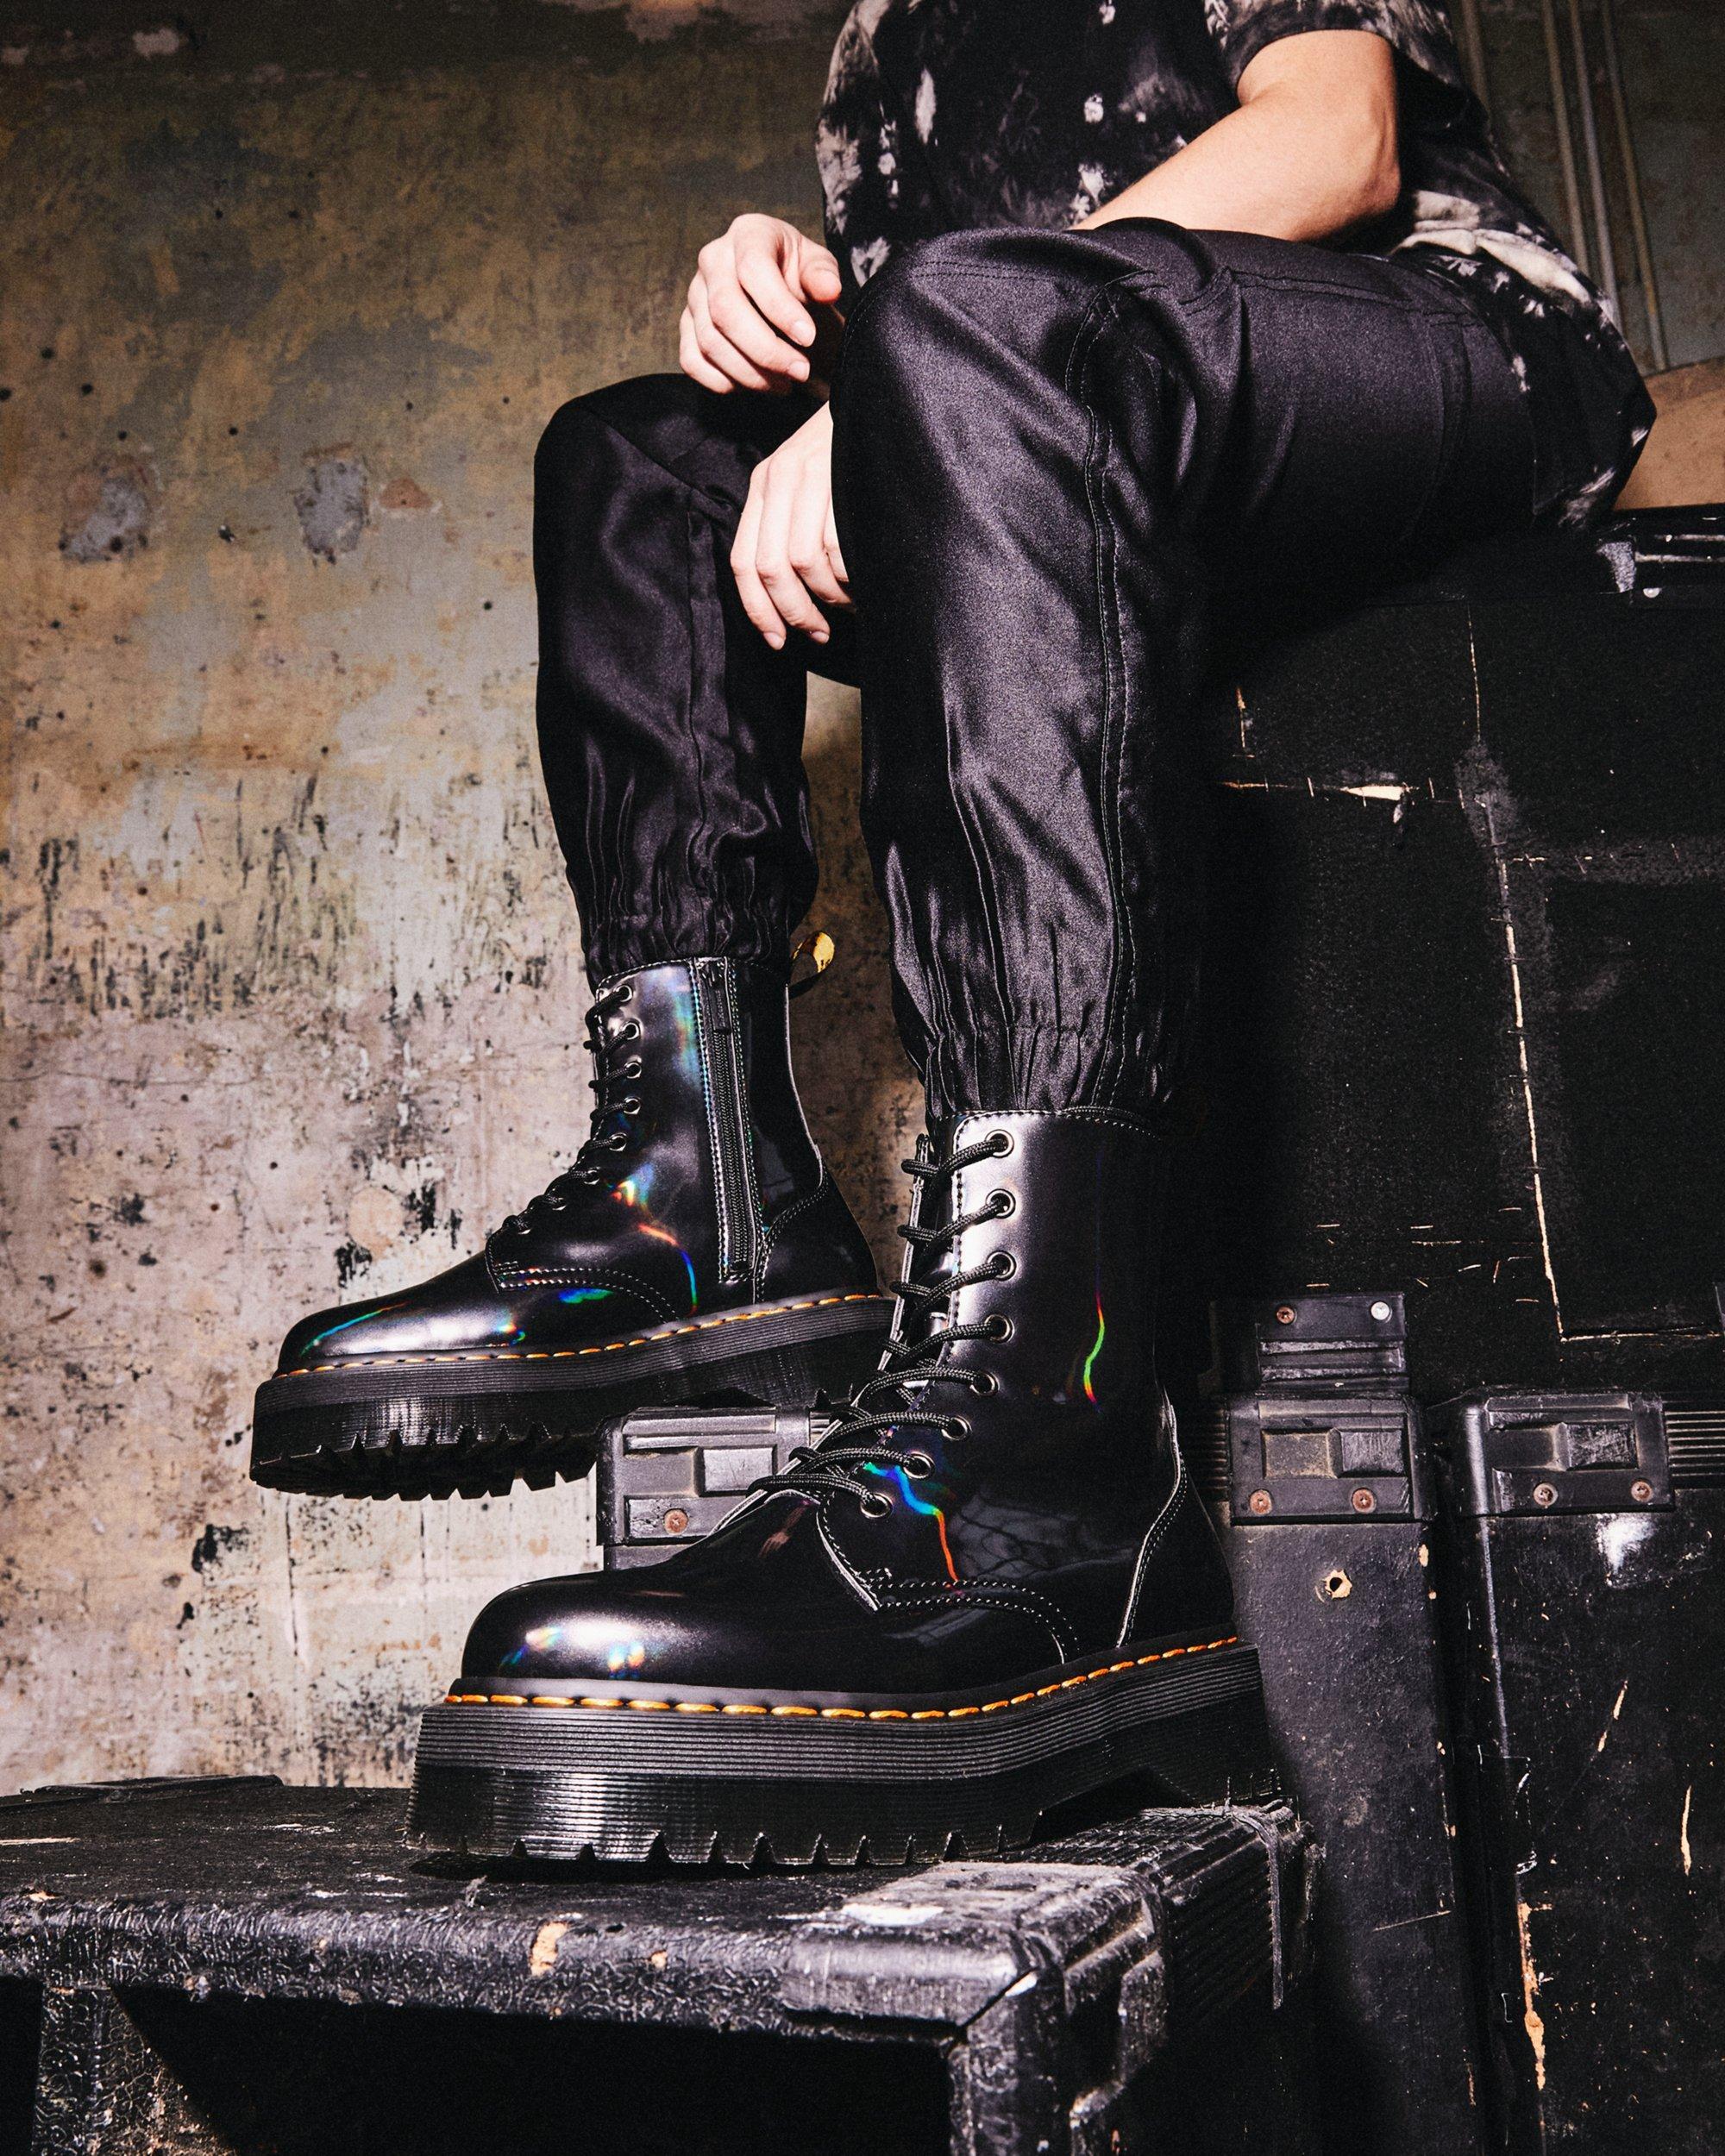 Dr. Martens Jadon Hologram Leather Platform Boots in Black | Lyst